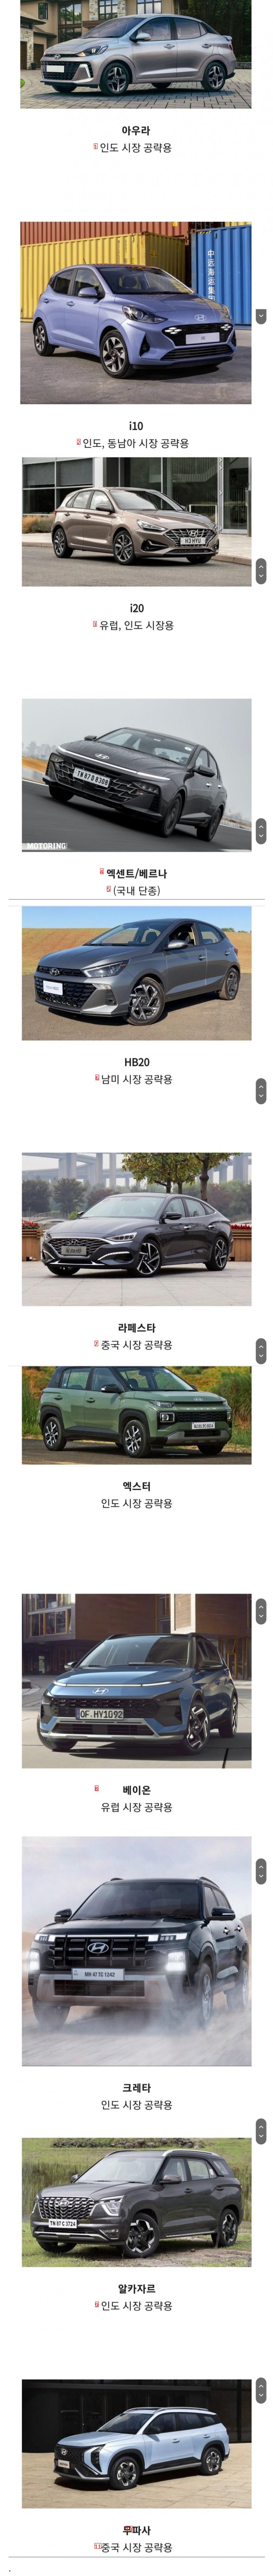 한국에선 볼 수 없는 현대차들